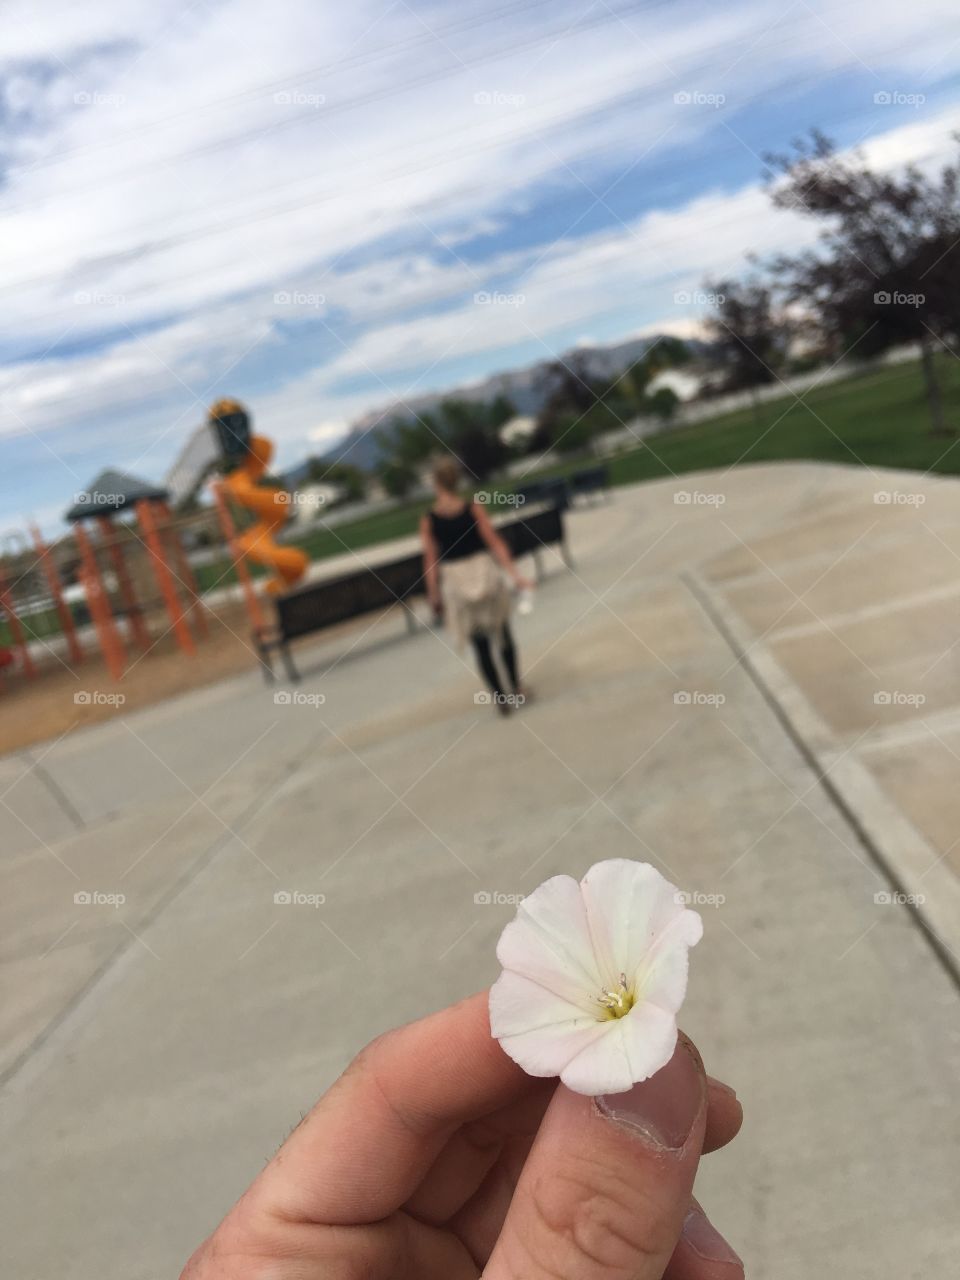 Flower walking 